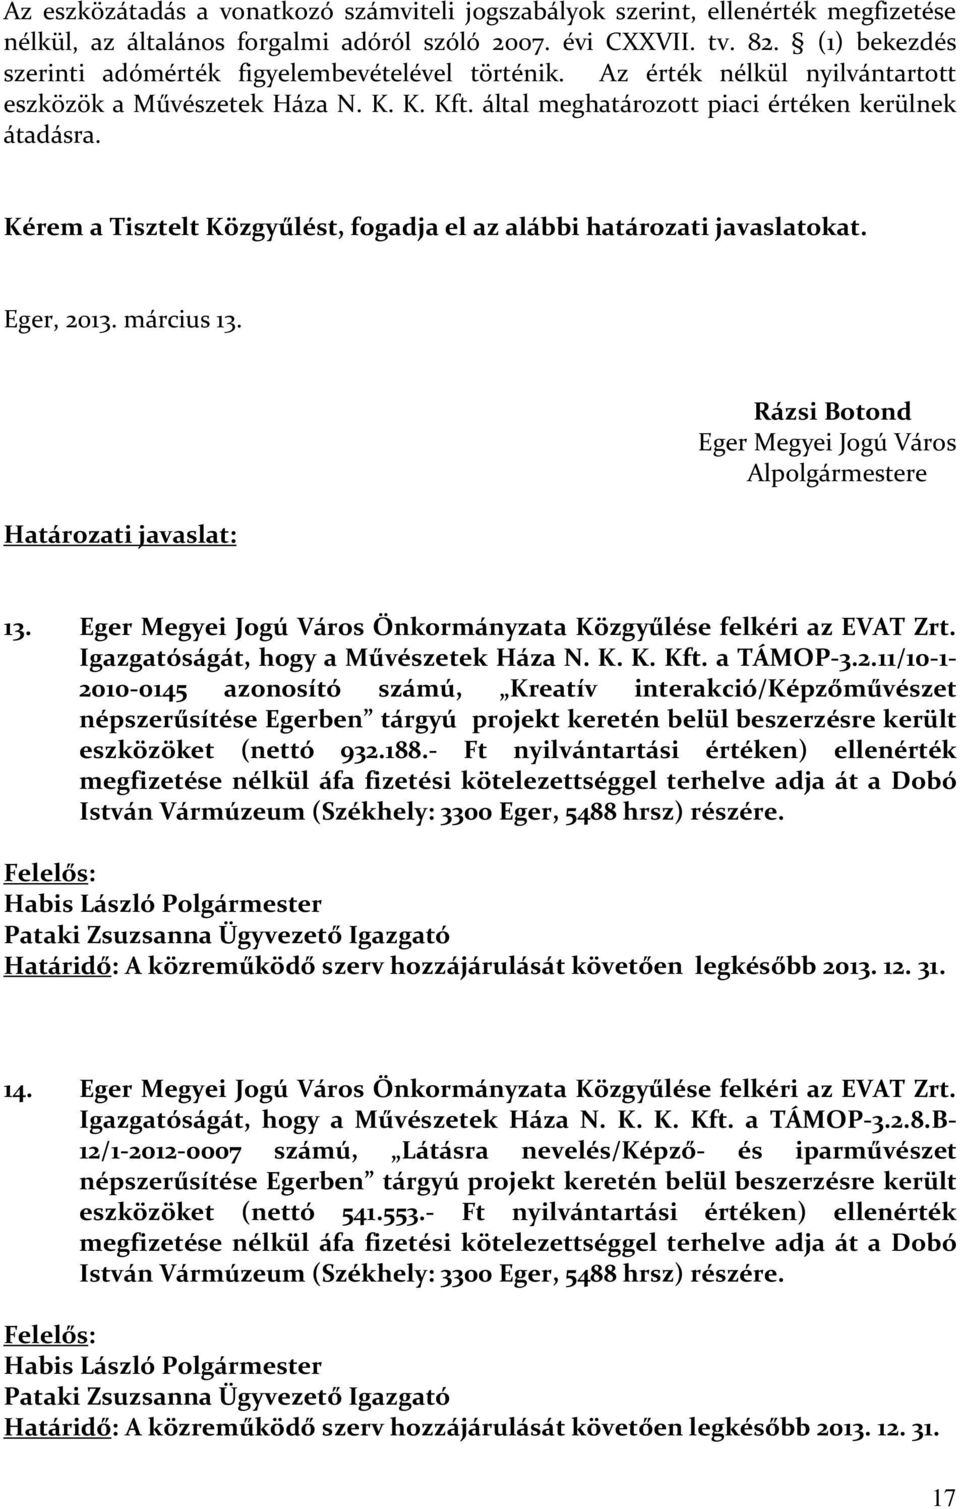 Kérem a Tisztelt Közgyűlést, fogadja el az alábbi határozati javaslatokat. Eger, 2013. március 13. Határozati javaslat: Rázsi Botond Eger Megyei Jogú Város Alpolgármestere 13.